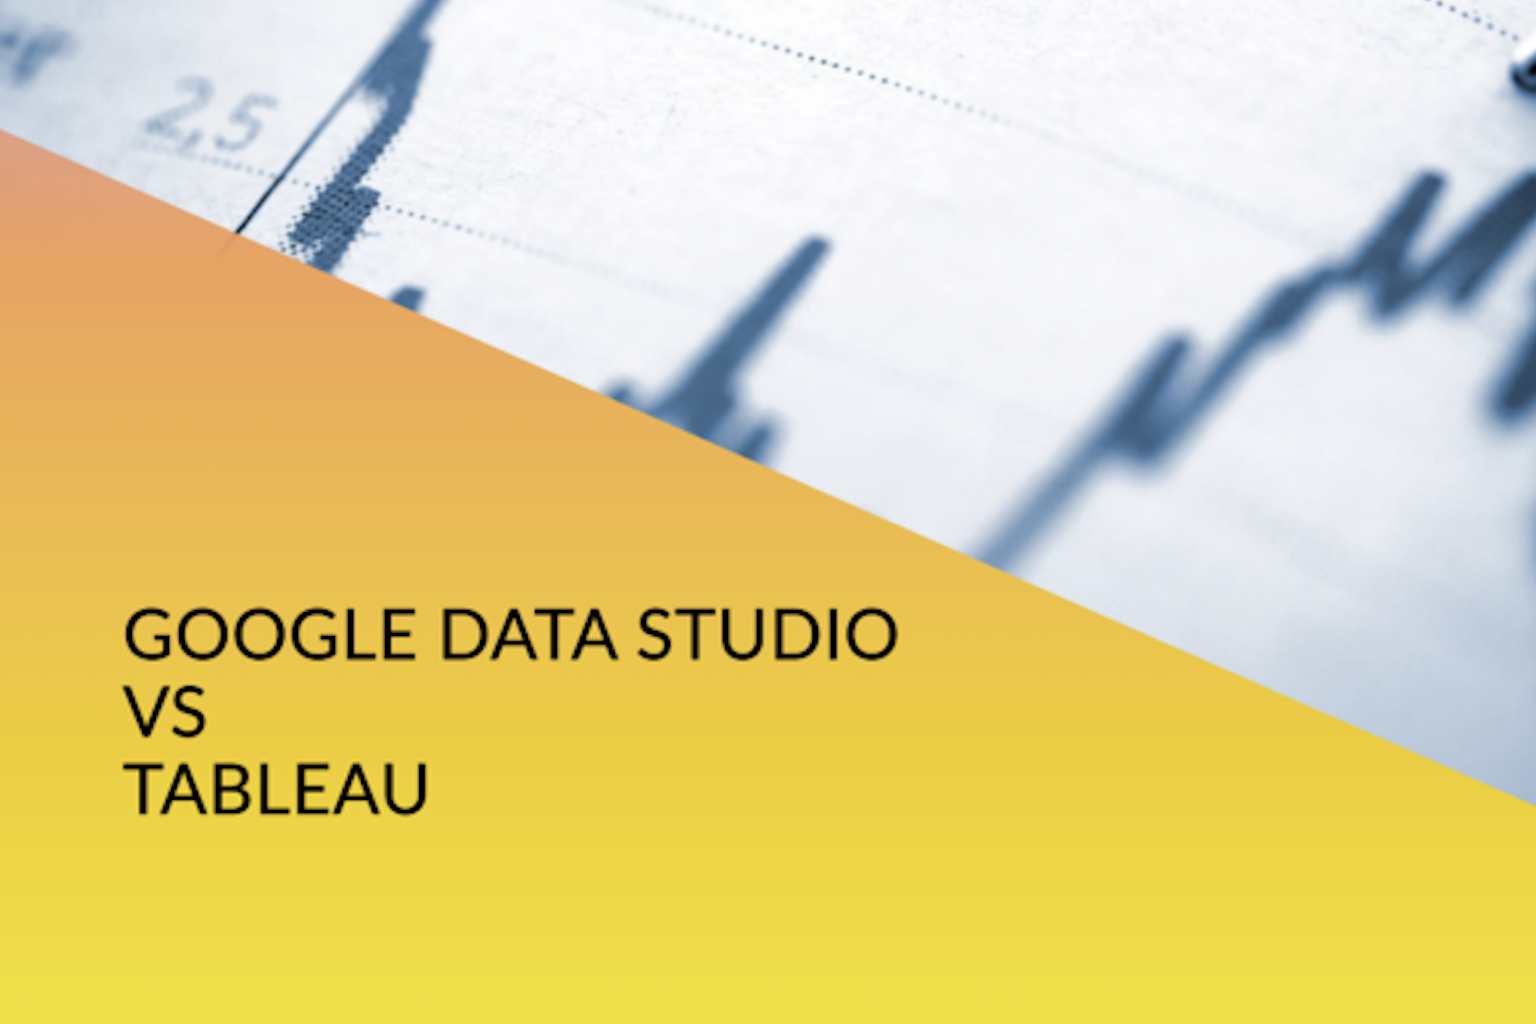 Descubra a comparação definitiva entre o Google Data Studio e o Tableau. Descubra qual ferramenta é perfeita para suas necessidades de visualização de dados. Clique para saber mais!